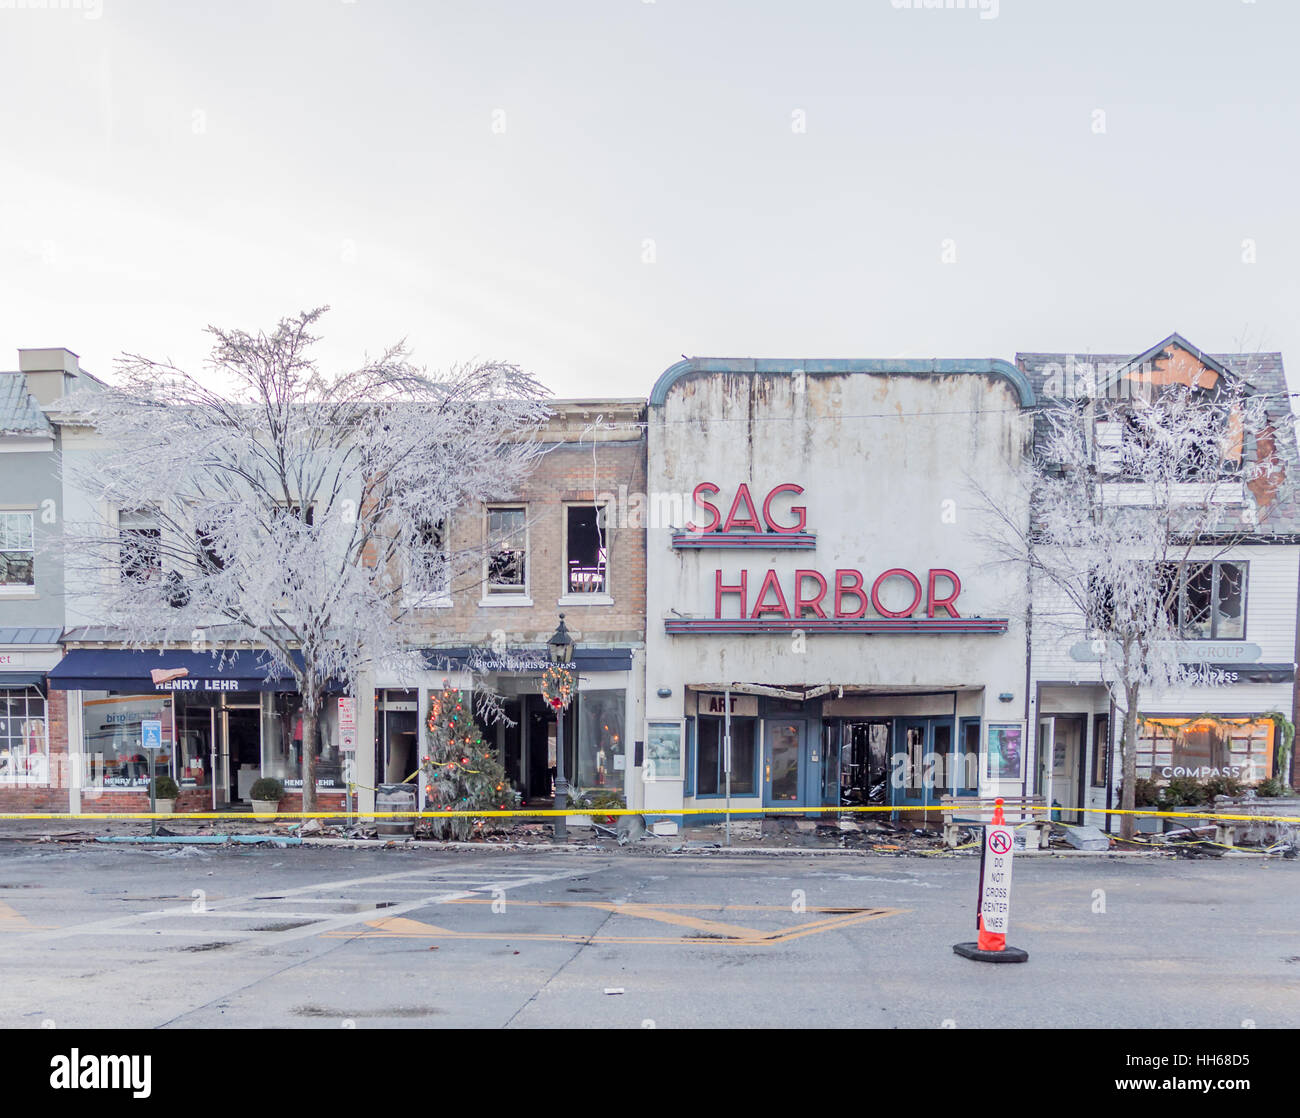 Sag Harbor Kino nach dem Brand hatte löschte. Stockfoto